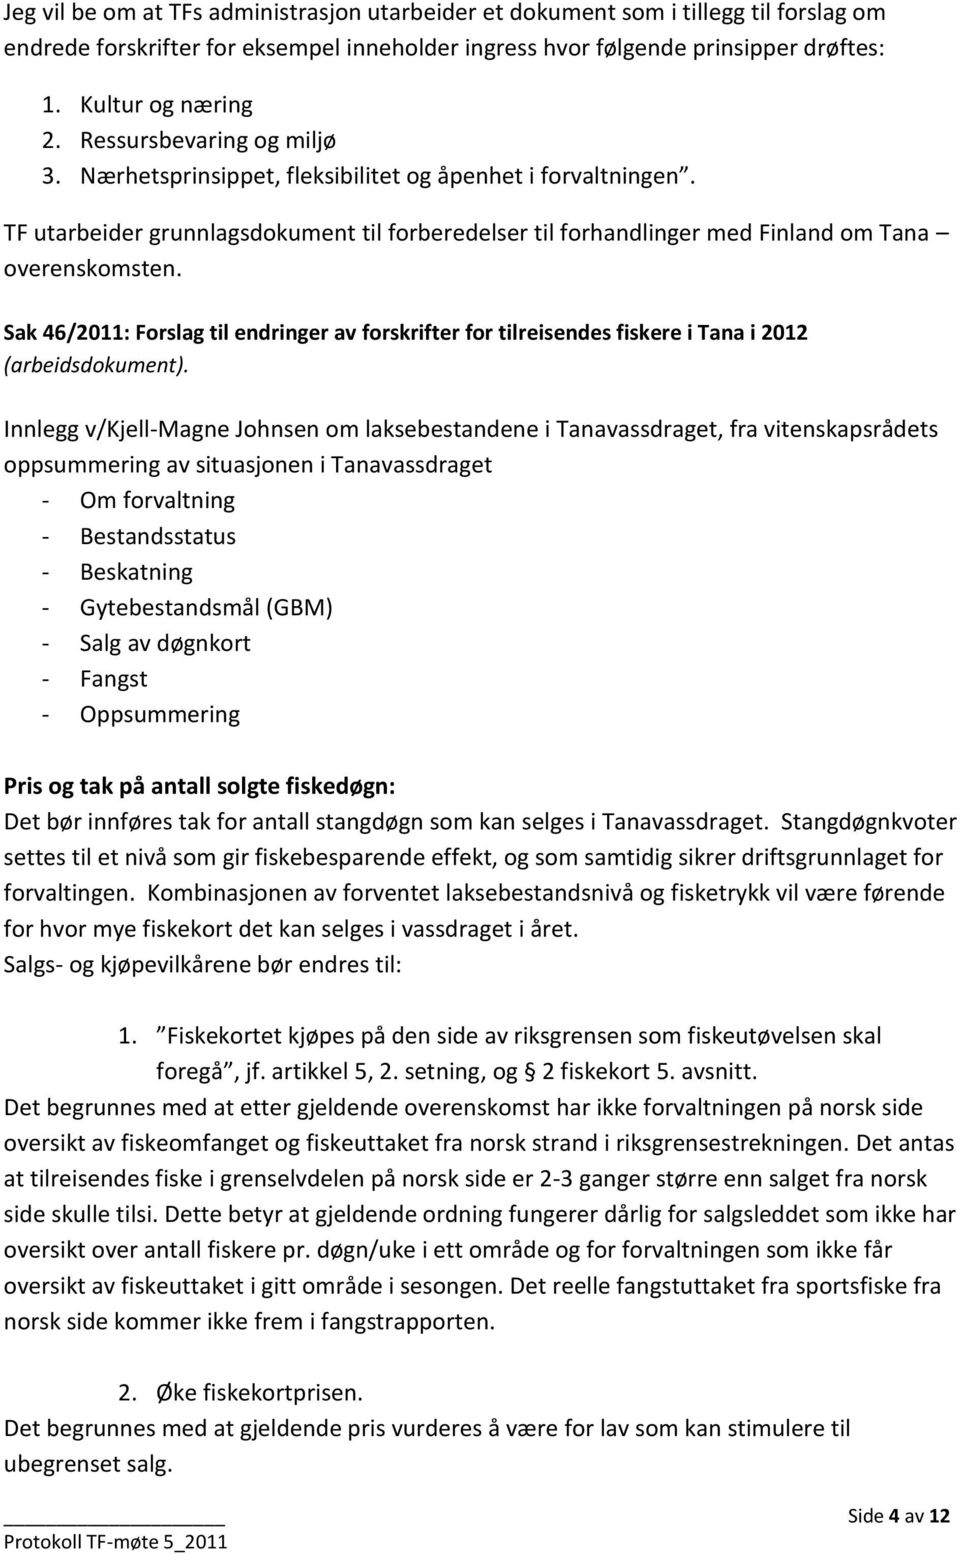 Sak 46/2011: Forslag til endringer av forskrifter for tilreisendes fiskere i Tana i 2012 (arbeidsdokument).